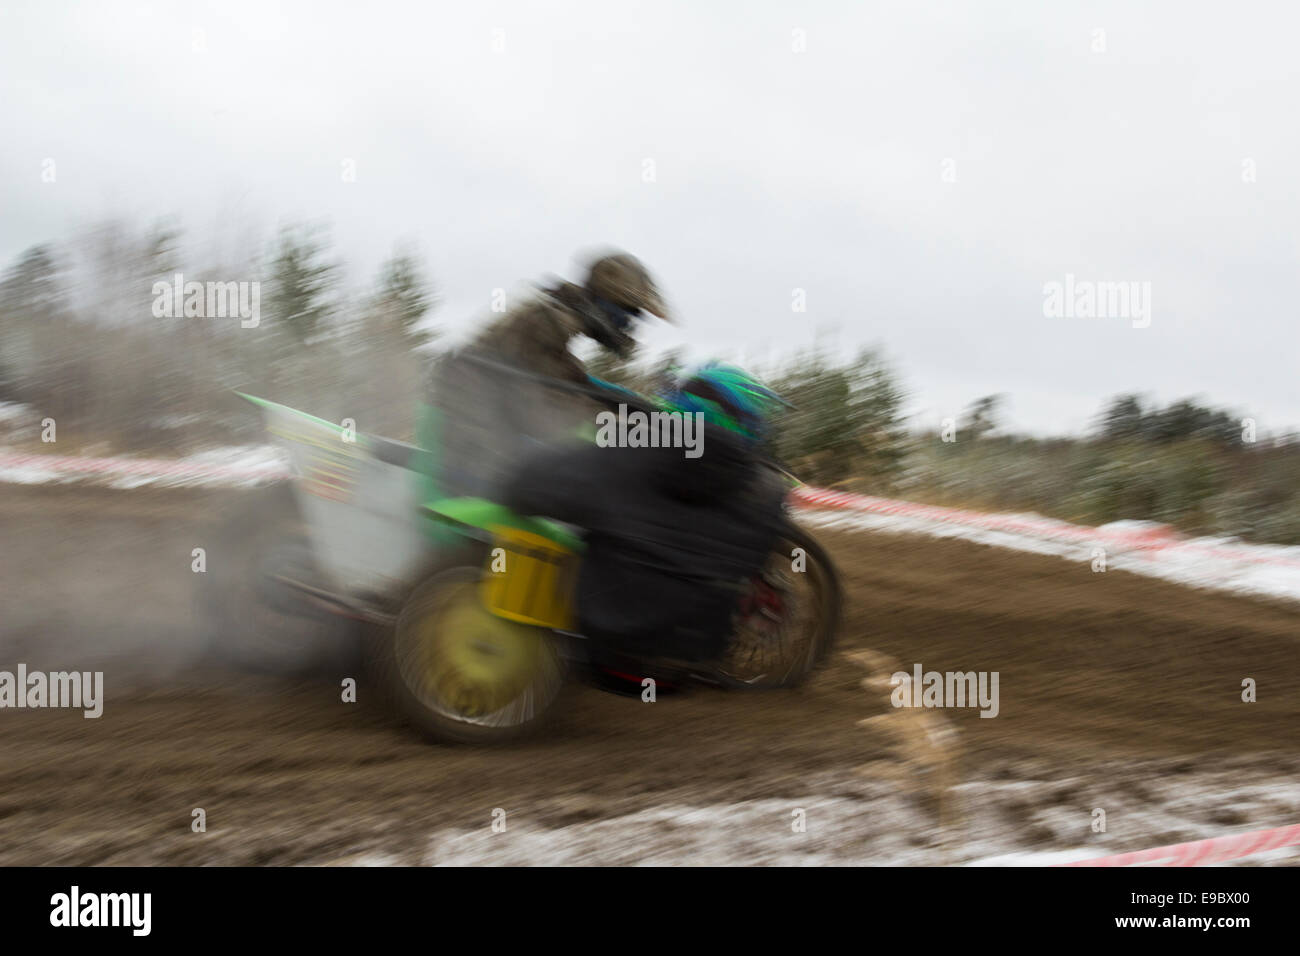 Rundkurs auf einem Motorrad mit Beiwagen. Stockfoto